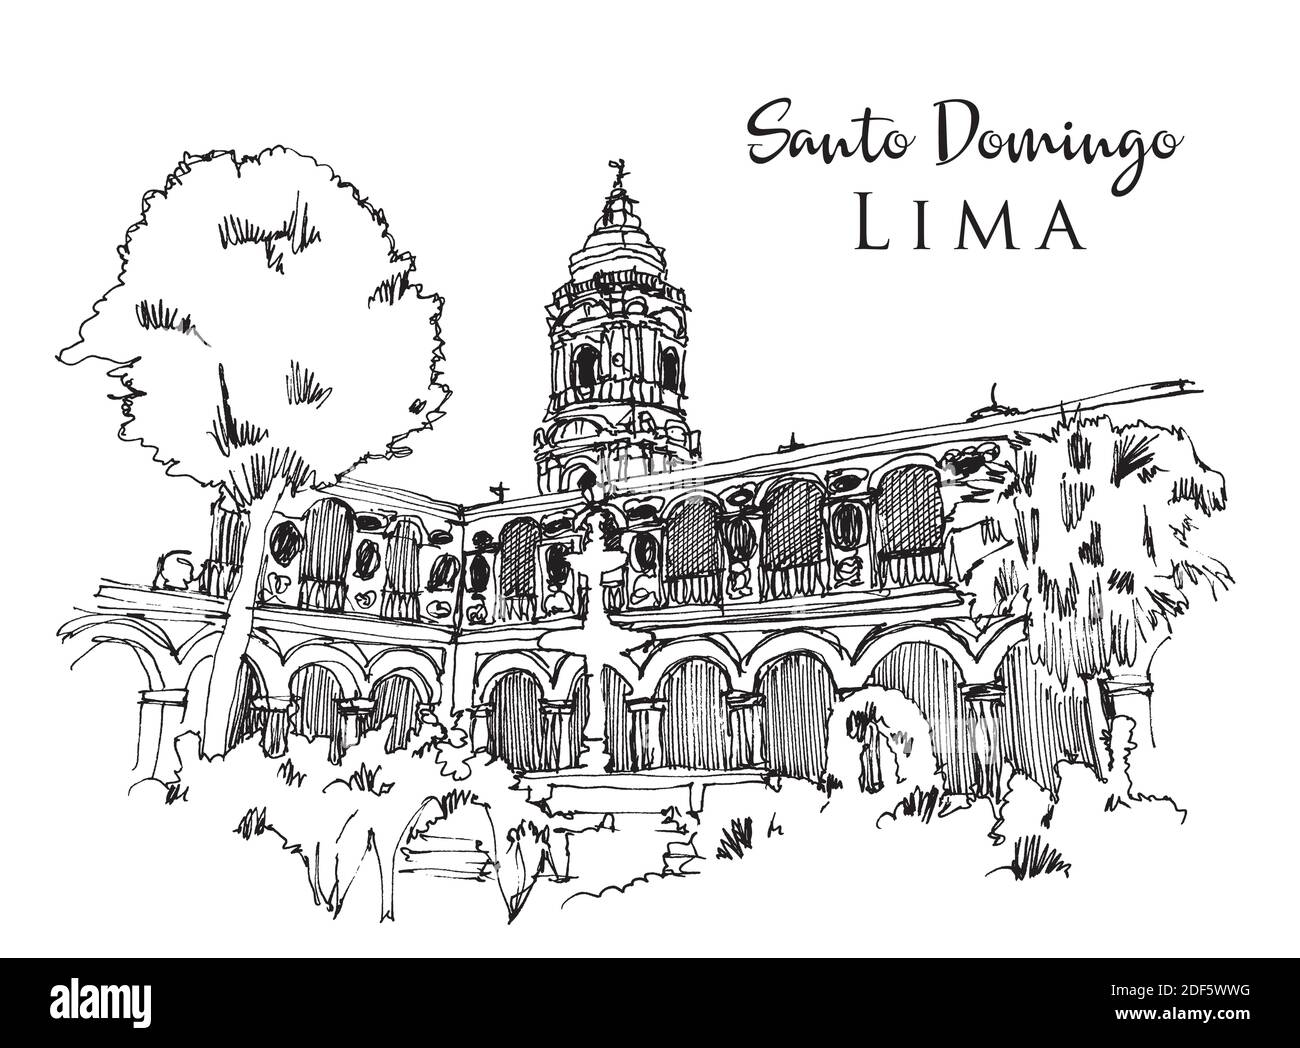 Vektor handgezeichnete Skizzendarstellung der Basilika und des Klosters von Santo Domingo in Lima, Peru Stock Vektor